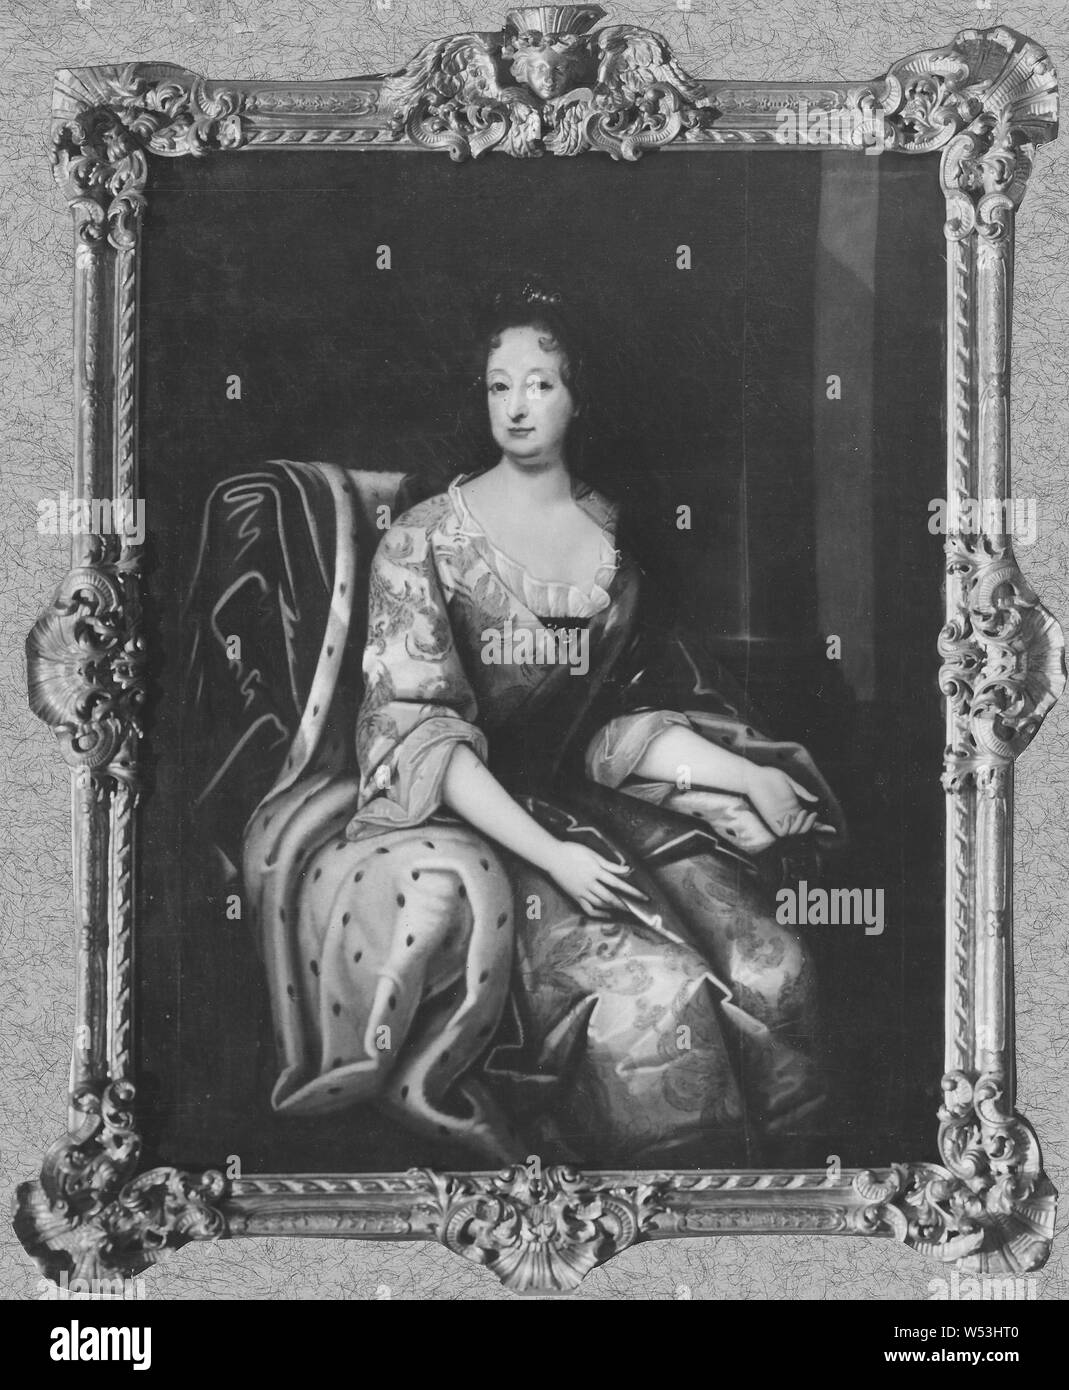 La Reina Sofía Charlotta, posiblemente Sofía Charlotta, 1668-1705, princesa del Palatinado, Duquesa de Braunschweig-Lüneburg, pintura, retrato, Sophia Charlotte de Hanover, óleo sobre lienzo, altura 146 cm (57,4 pulgadas) de ancho, y 117 cm (46 pulgadas) Foto de stock